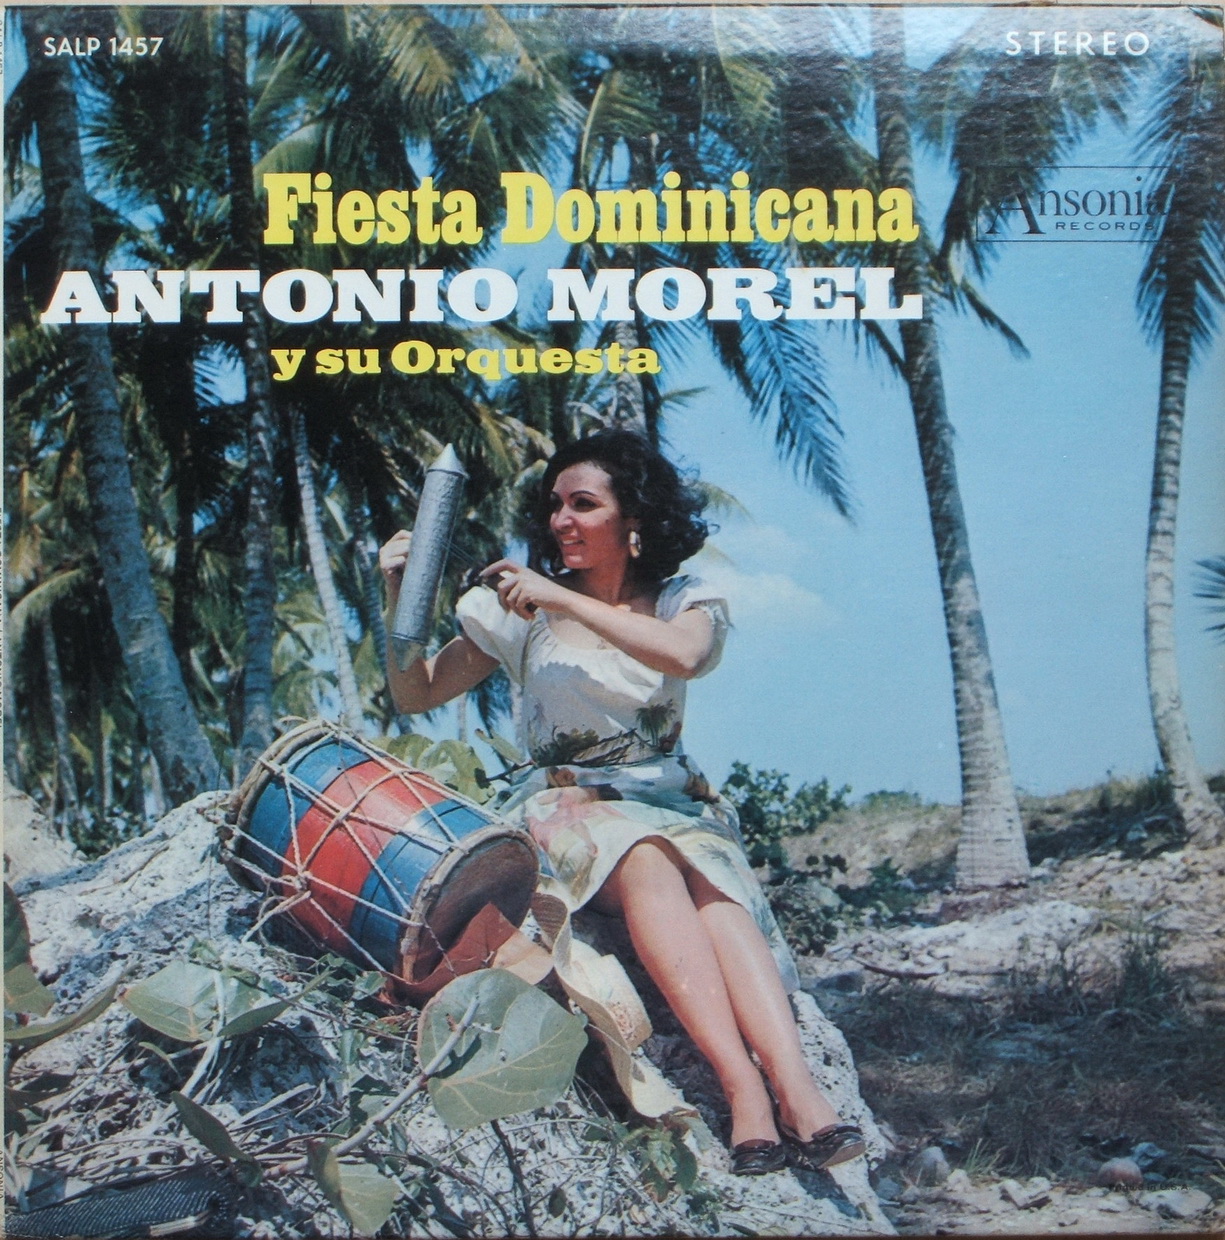 antonio morel - fiesta dominicana (1973) Salp+1457